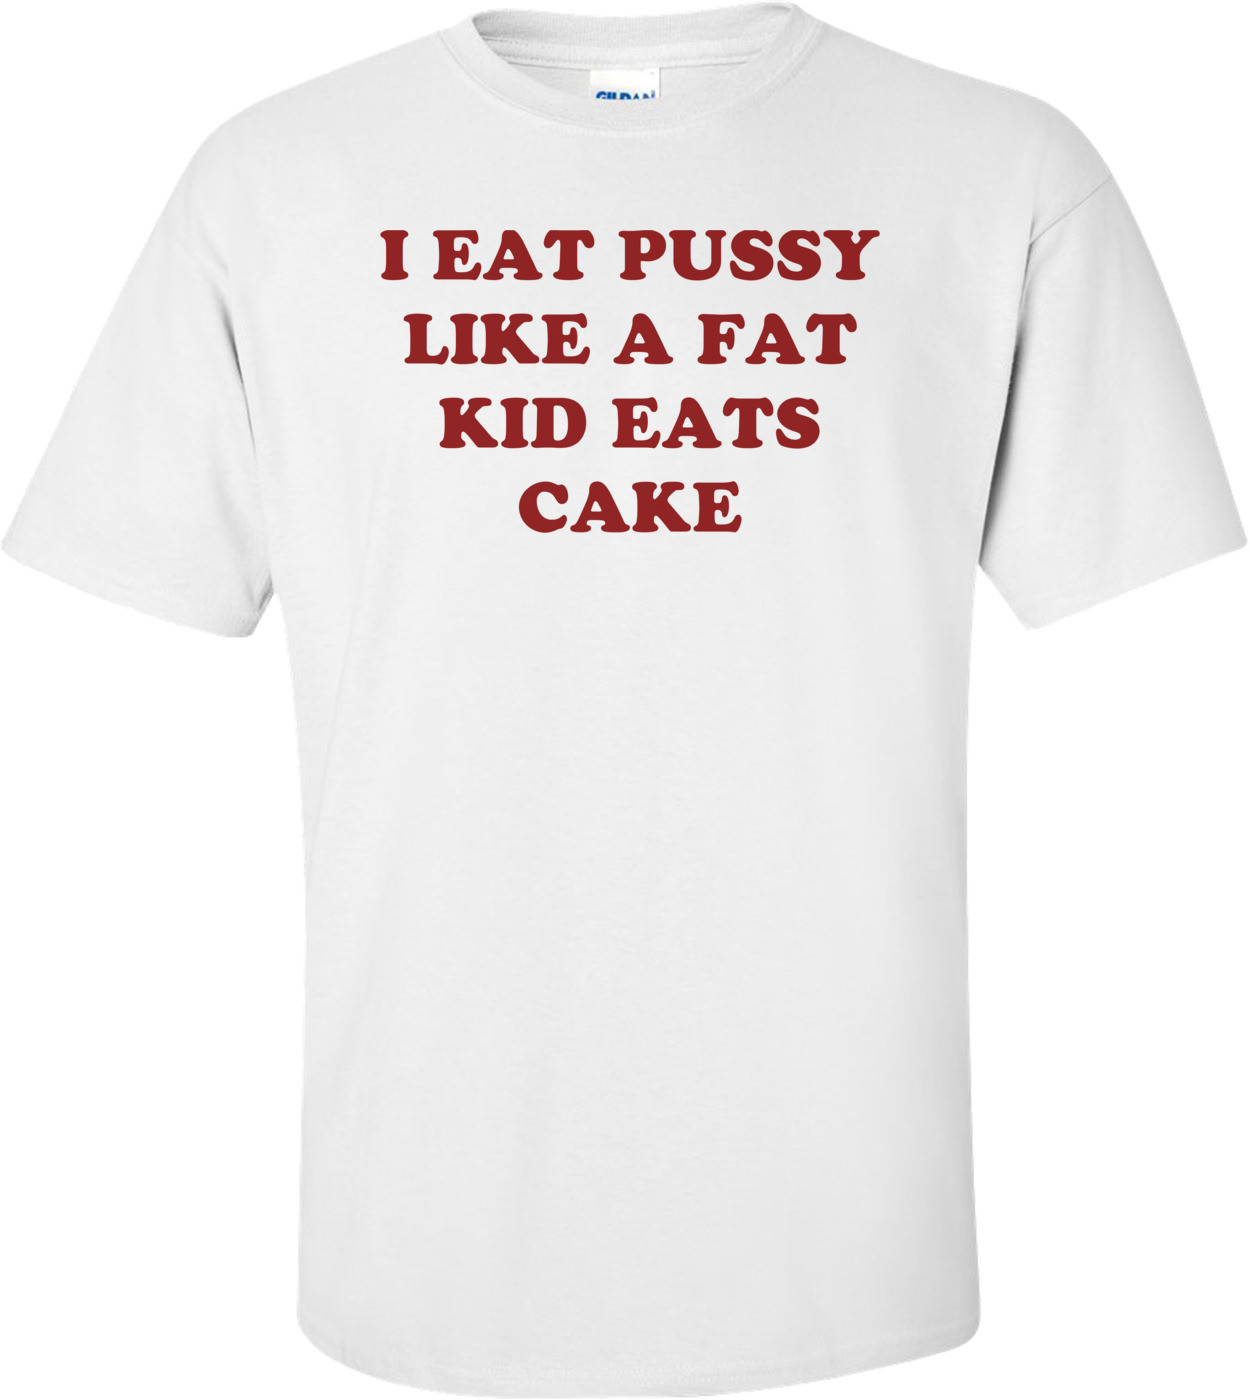 I EAT PUSSY LIKE A FAT KID EATS CAKE Shirt